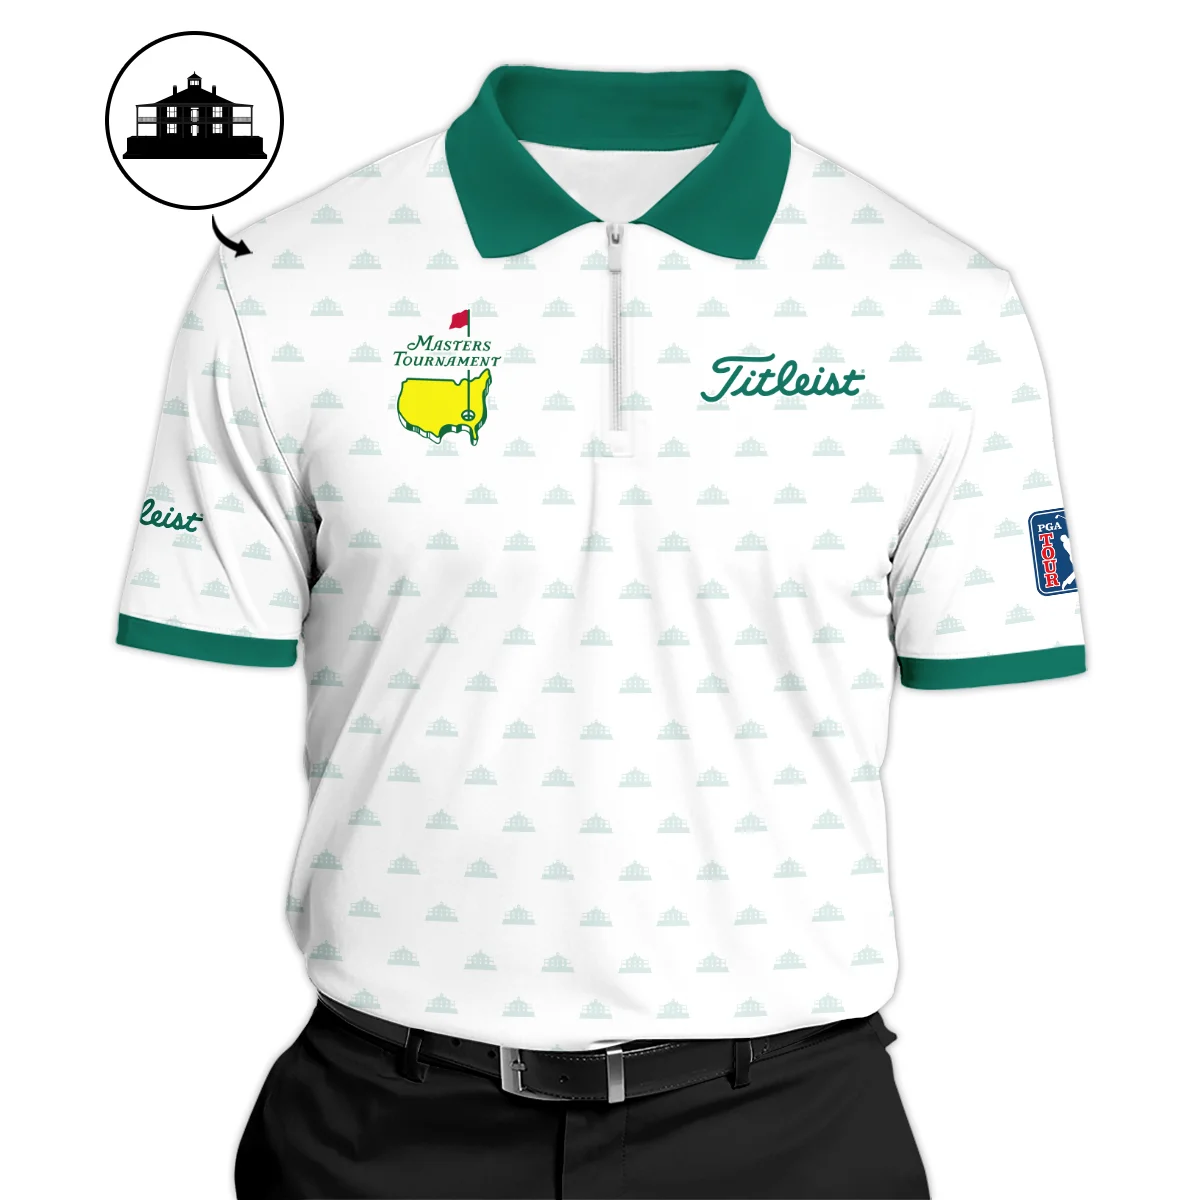 Masters Tournament Golf Sport Titleist Zipper Polo Shirt Sports Cup Pattern White Green Zipper Polo Shirt For Men